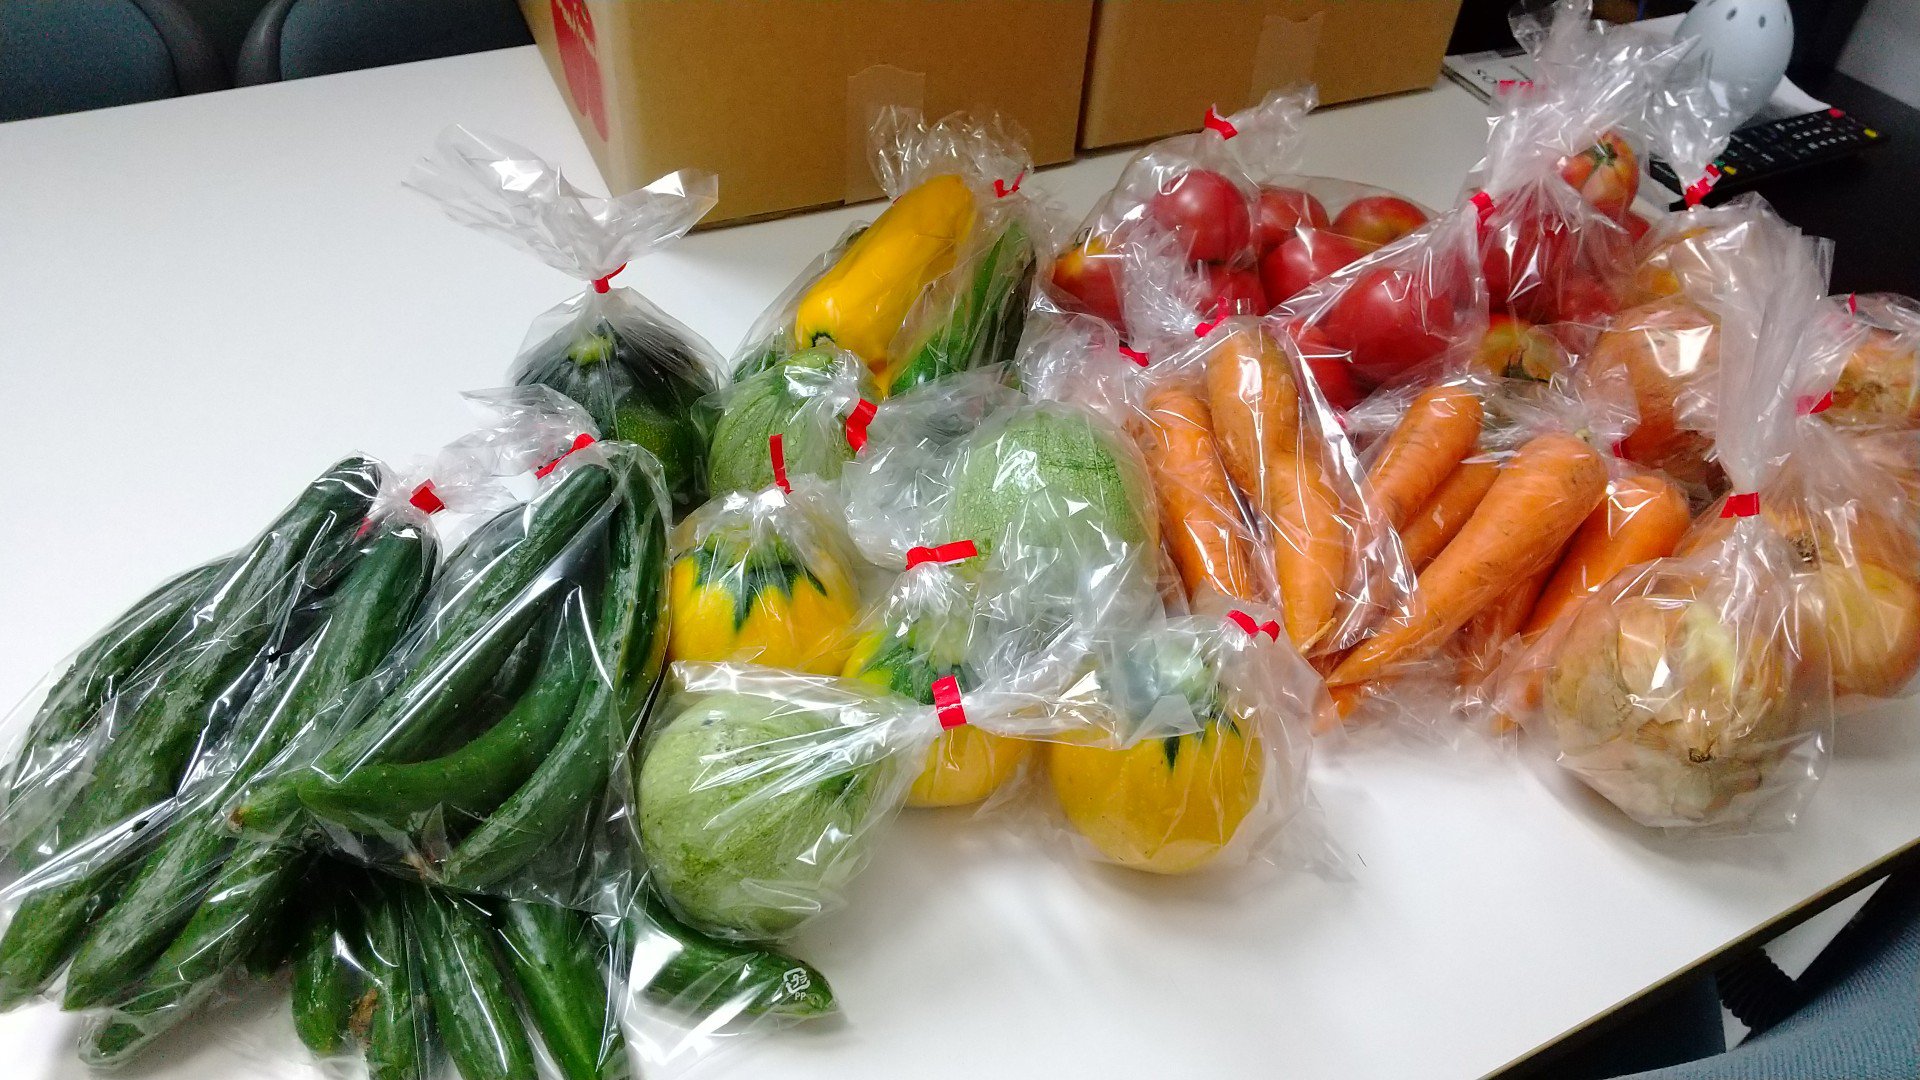 高橋様より留学生に野菜（トマト、キュウリ、ズッキーニ、ニンジン、タマネギ）をいただきました